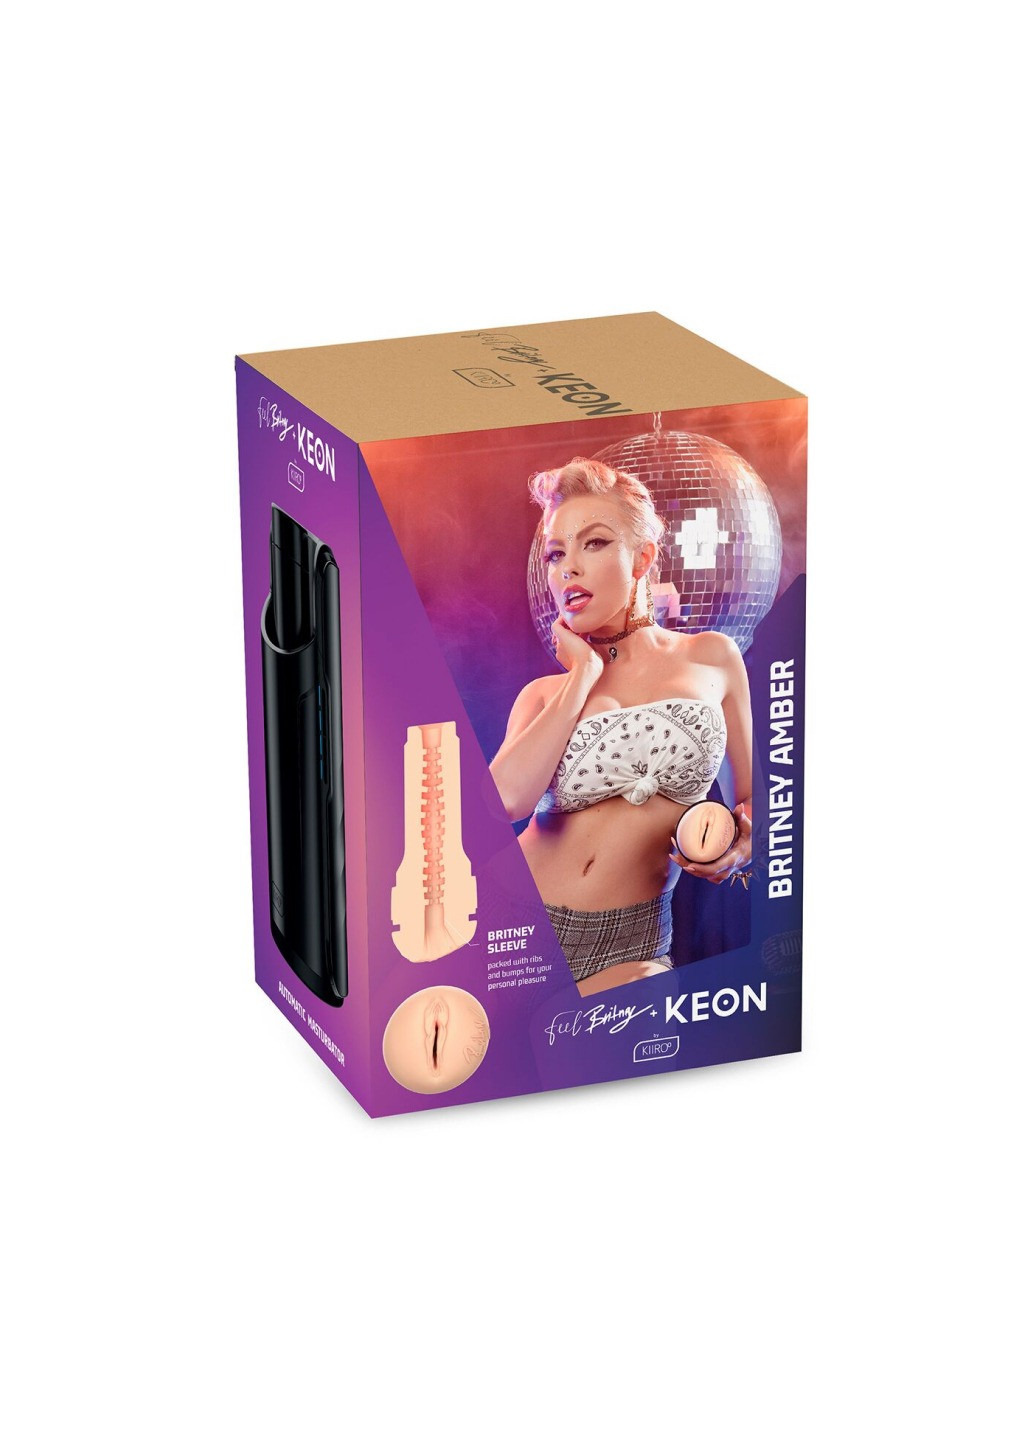 Интерактивная секс-машина для мужчин Keon Kombo Set с мастурбатором Feel Britney Kiiroo (276325695)